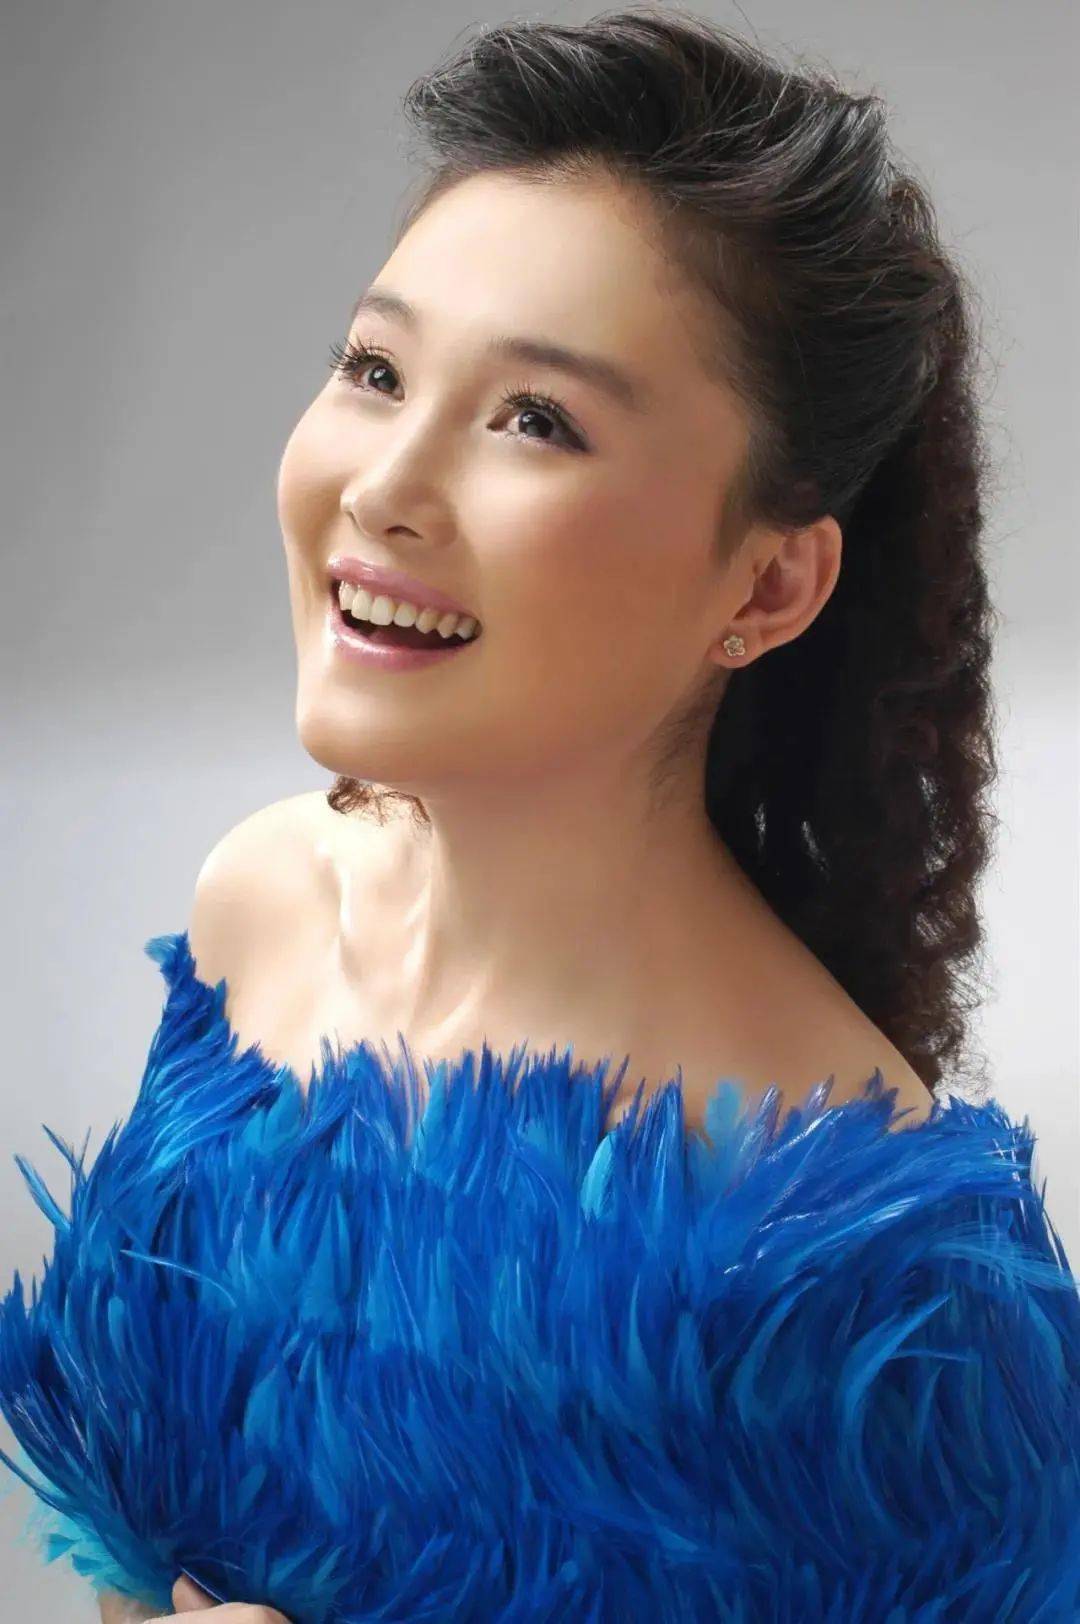 中央歌剧院 女高音歌唱家 徐春雨 中央歌剧院 女高音歌唱家 王红